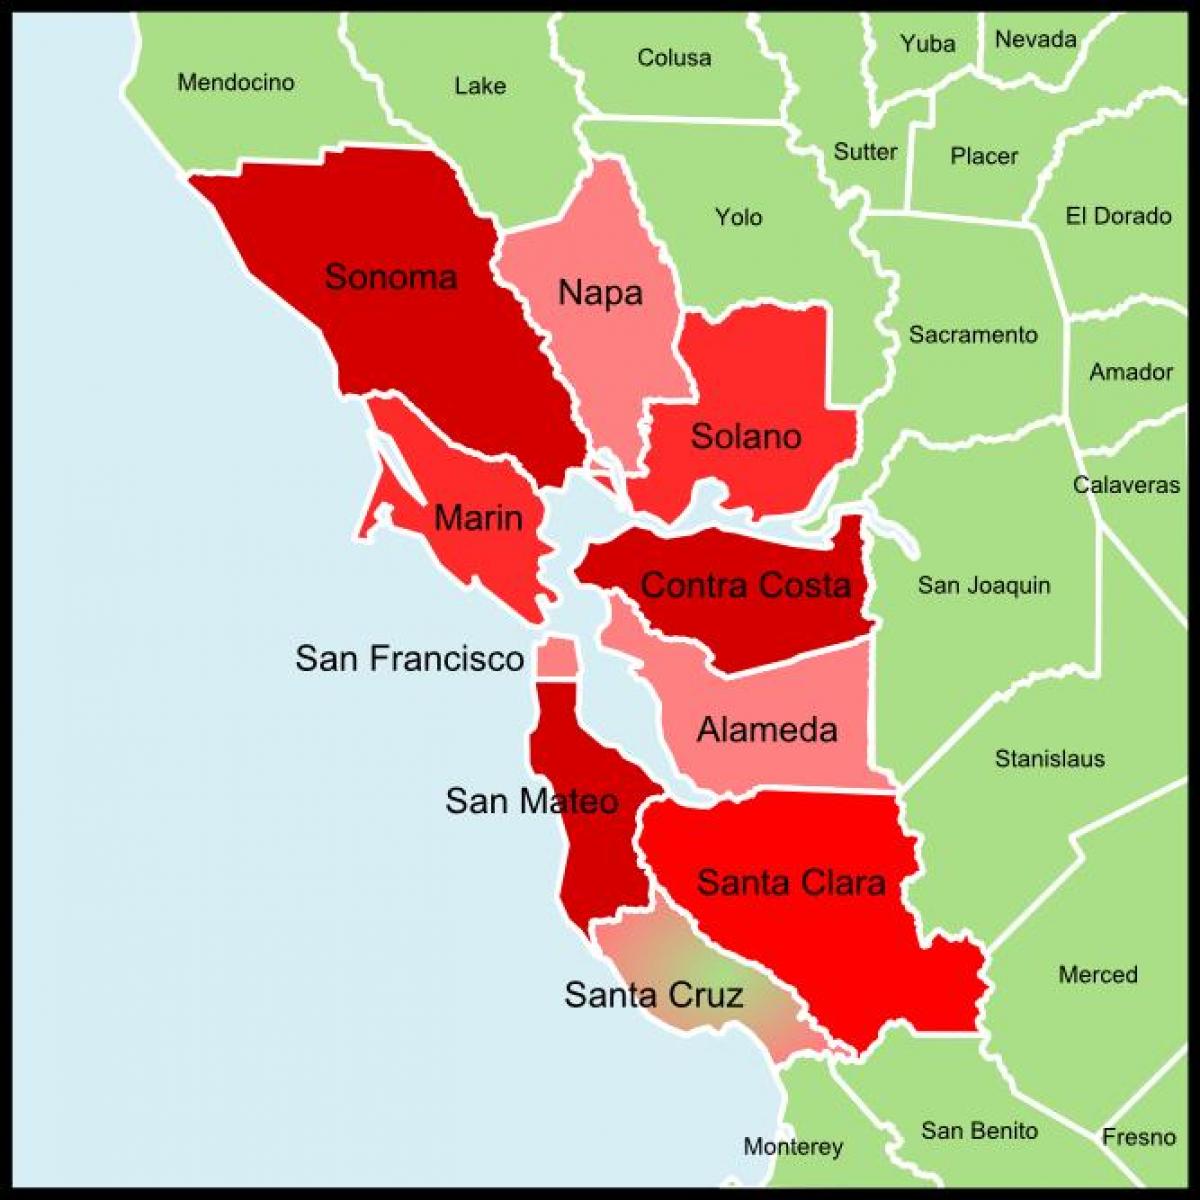 San Francisco bay area نقشه شهرستان